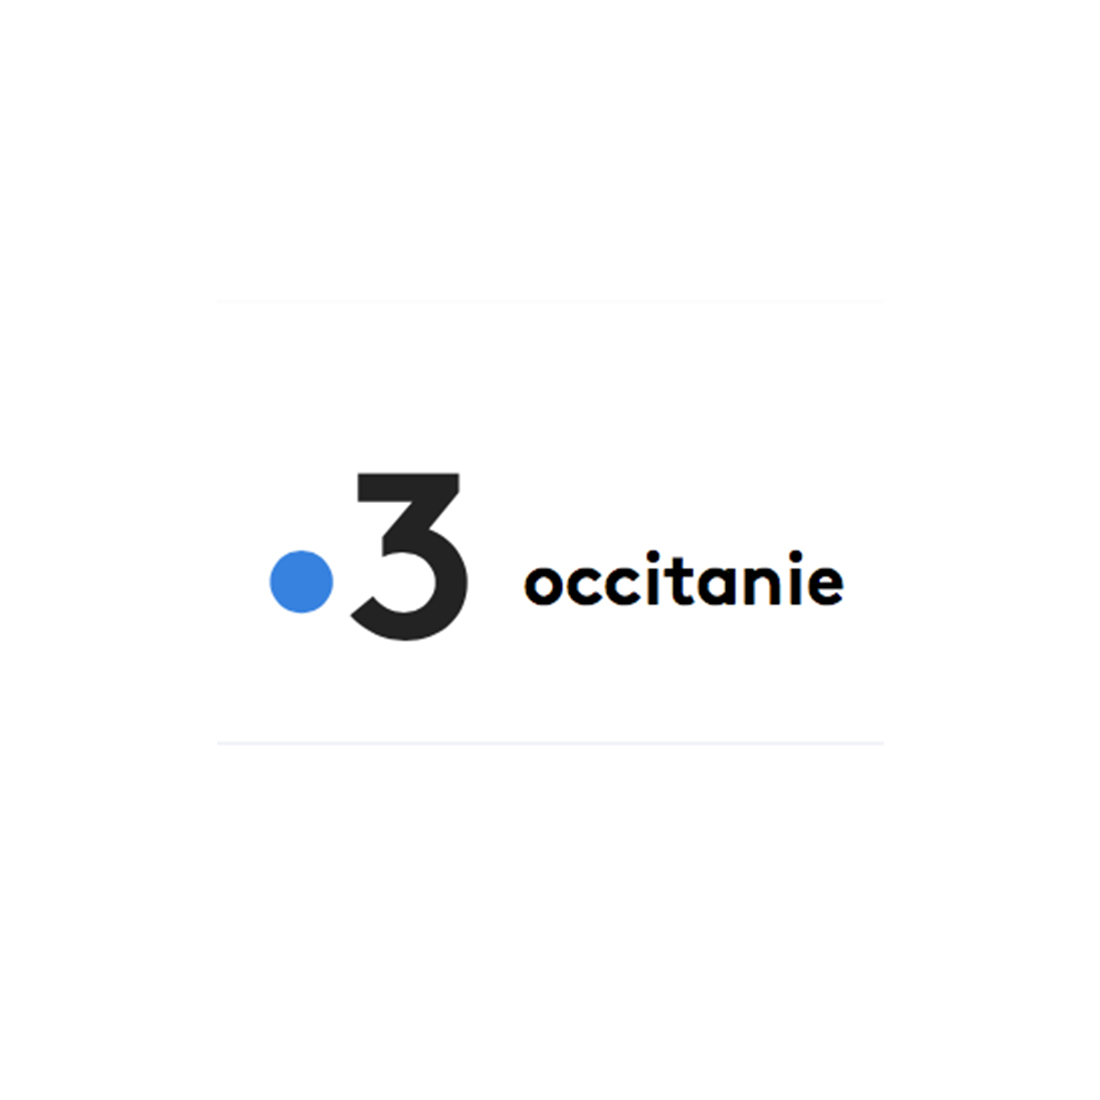 FRANCE 3 OCCITANIE 27.09.2021 | Brenac & Gonzalez et Associés